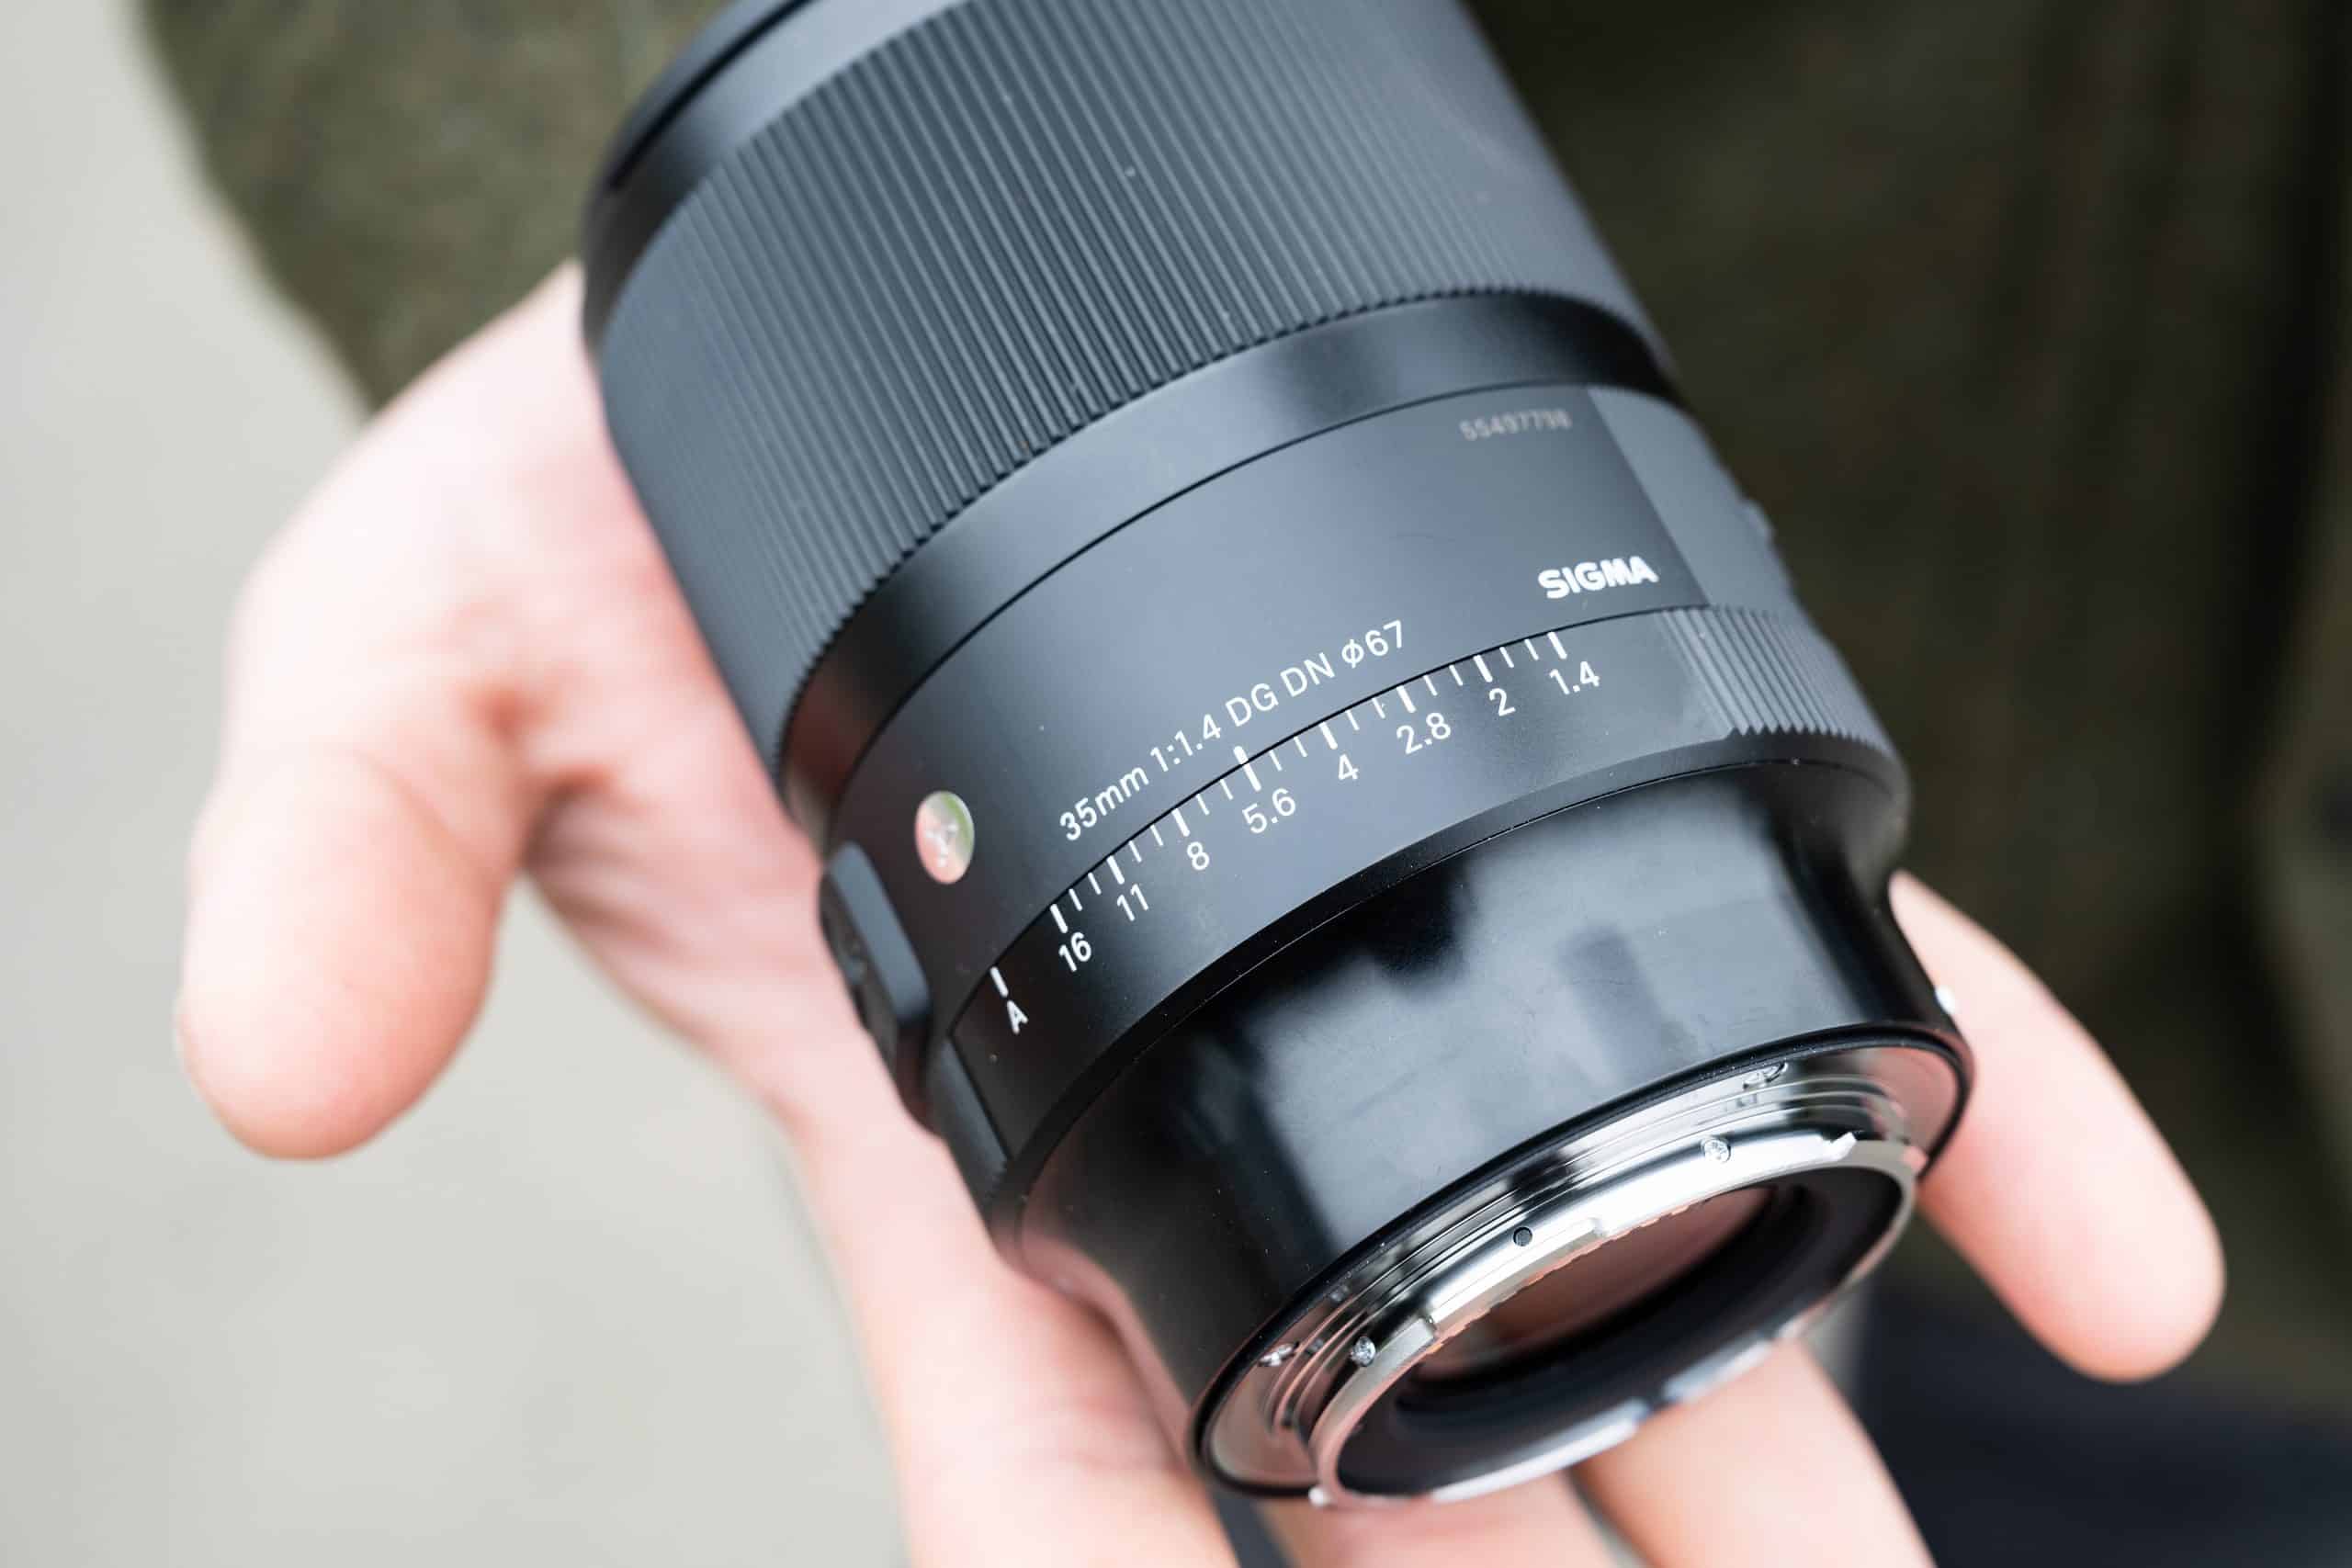 Ống kính Sigma 35mm F1.4 DG DN Art cho Sony E